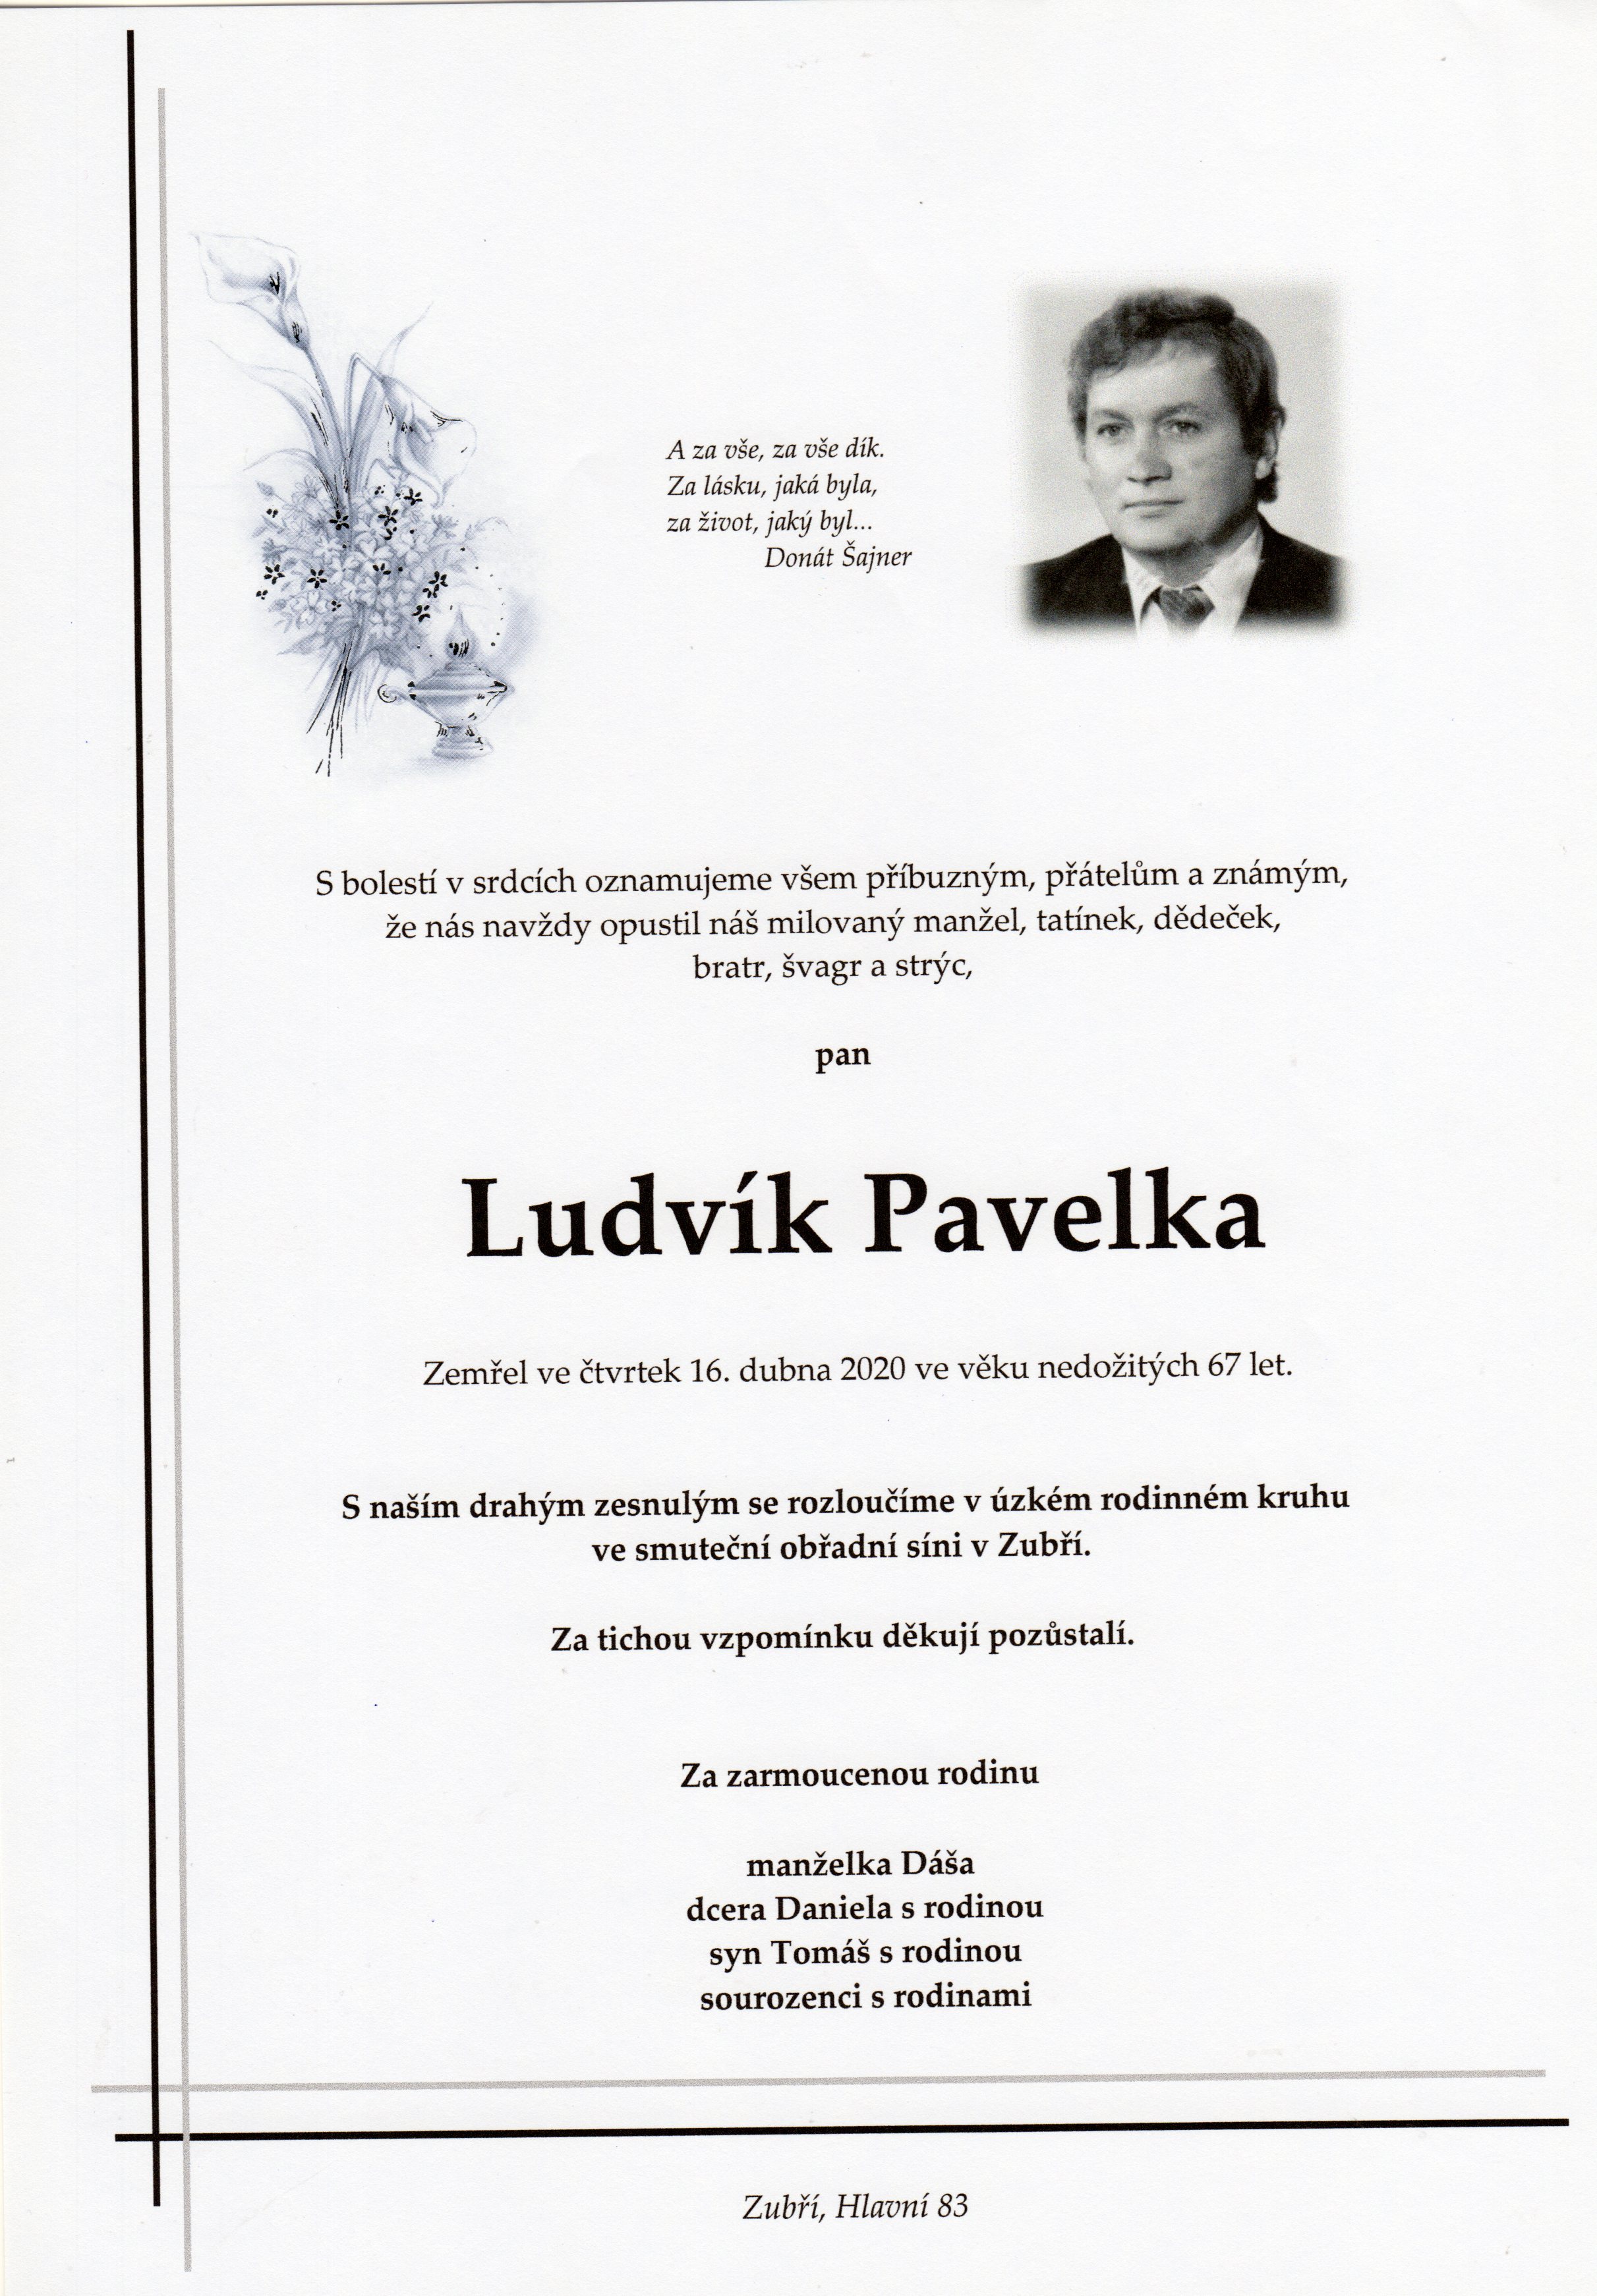 Ludvík Pavelka